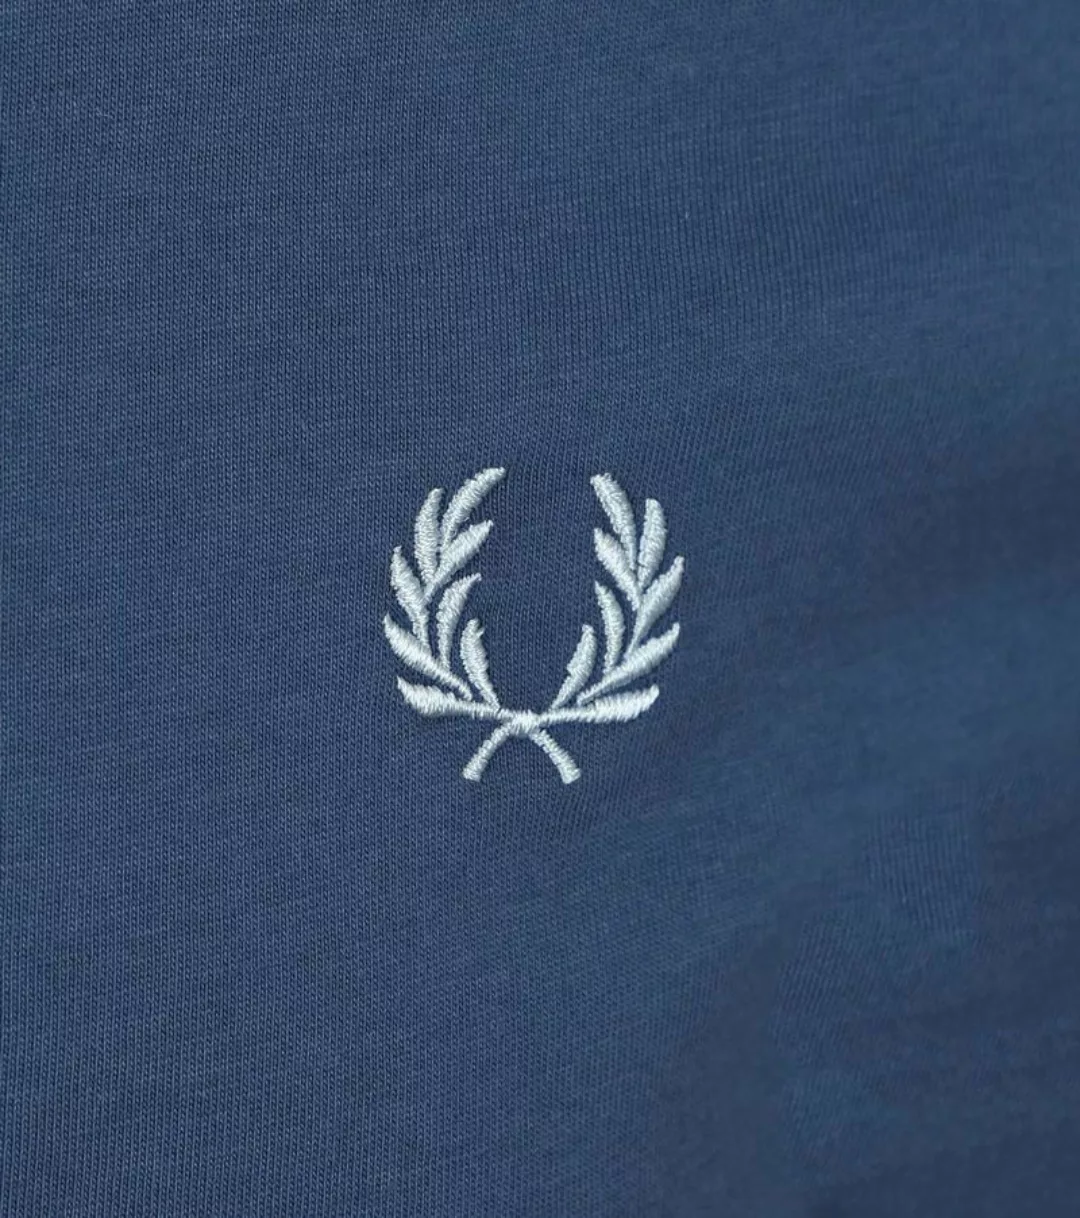 Fred Perry T-Shirt Ringer M3519 Blau V06 - Größe S günstig online kaufen